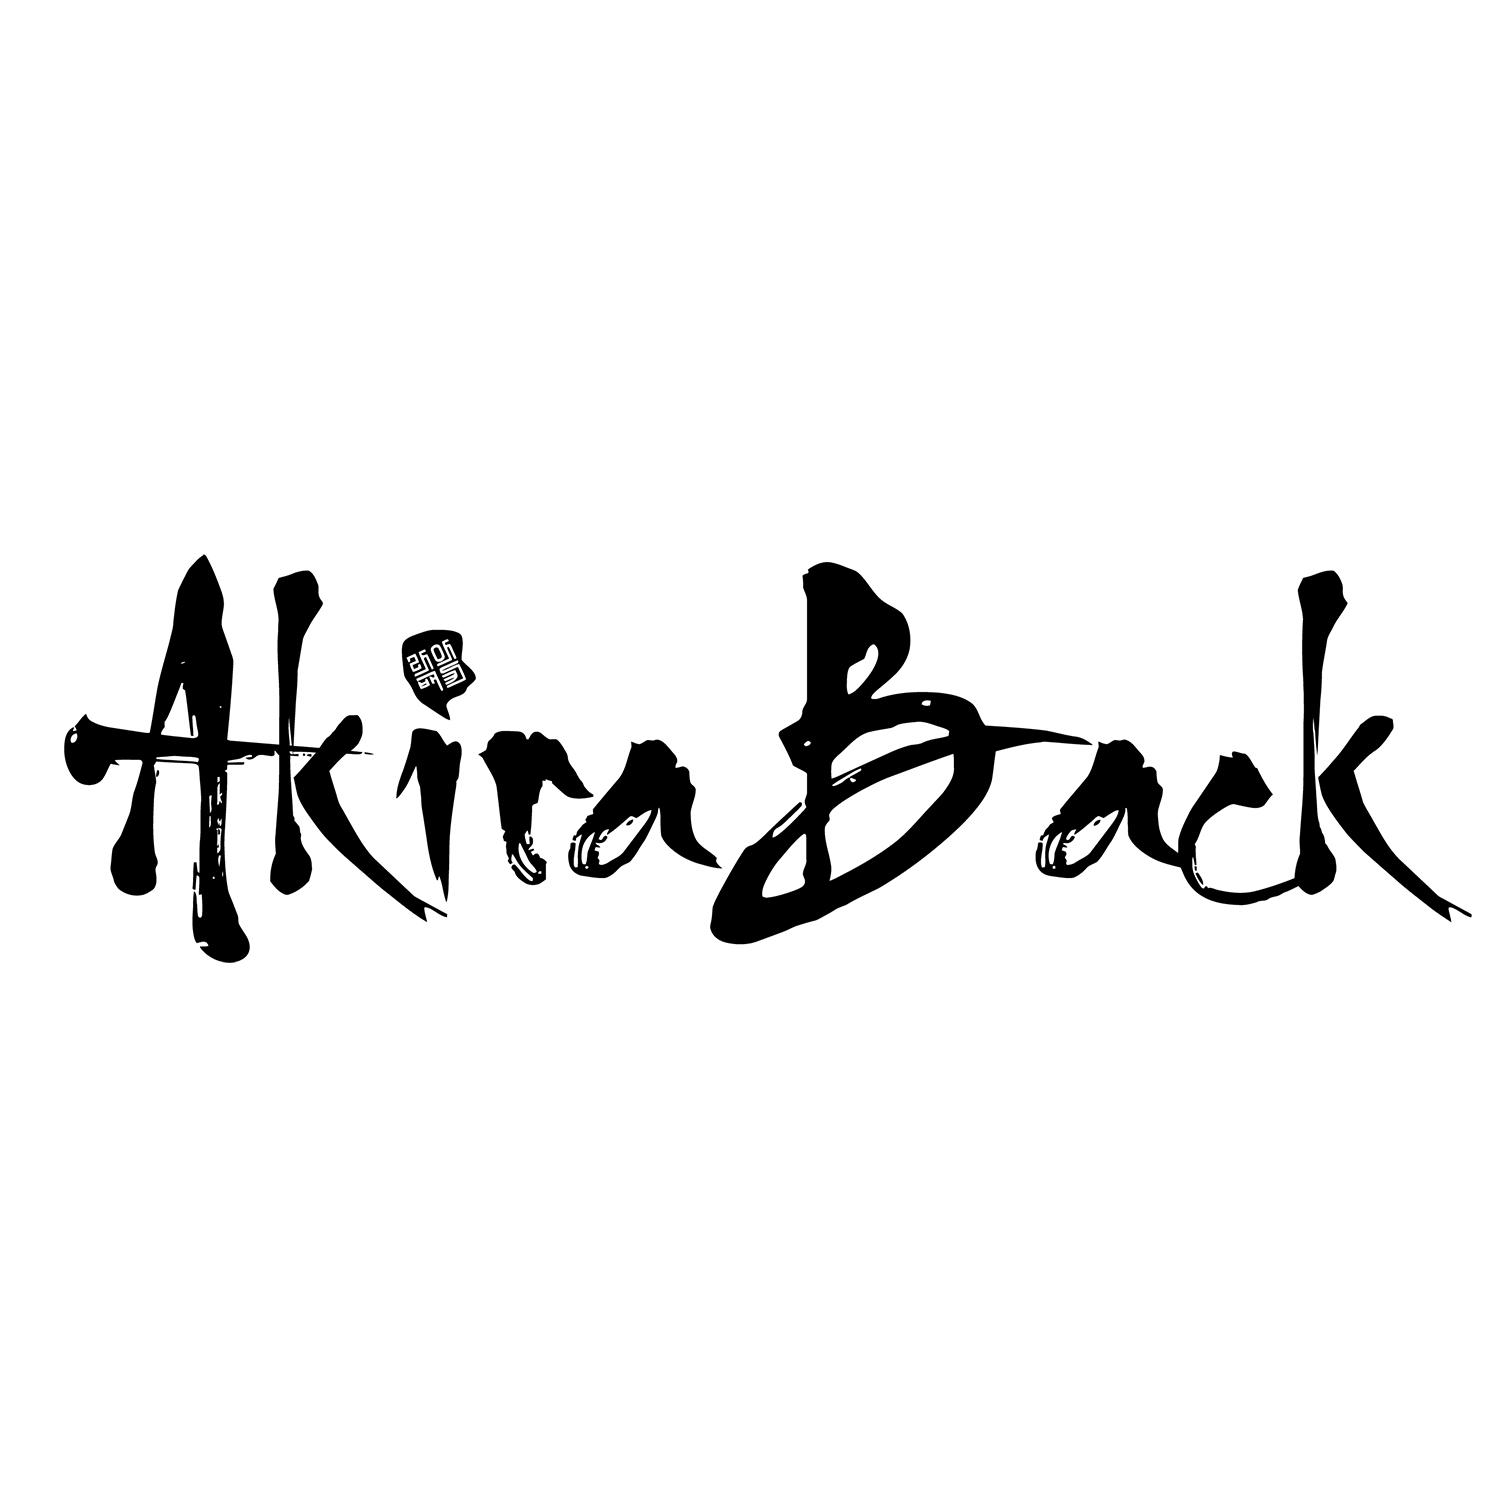 Akira Back